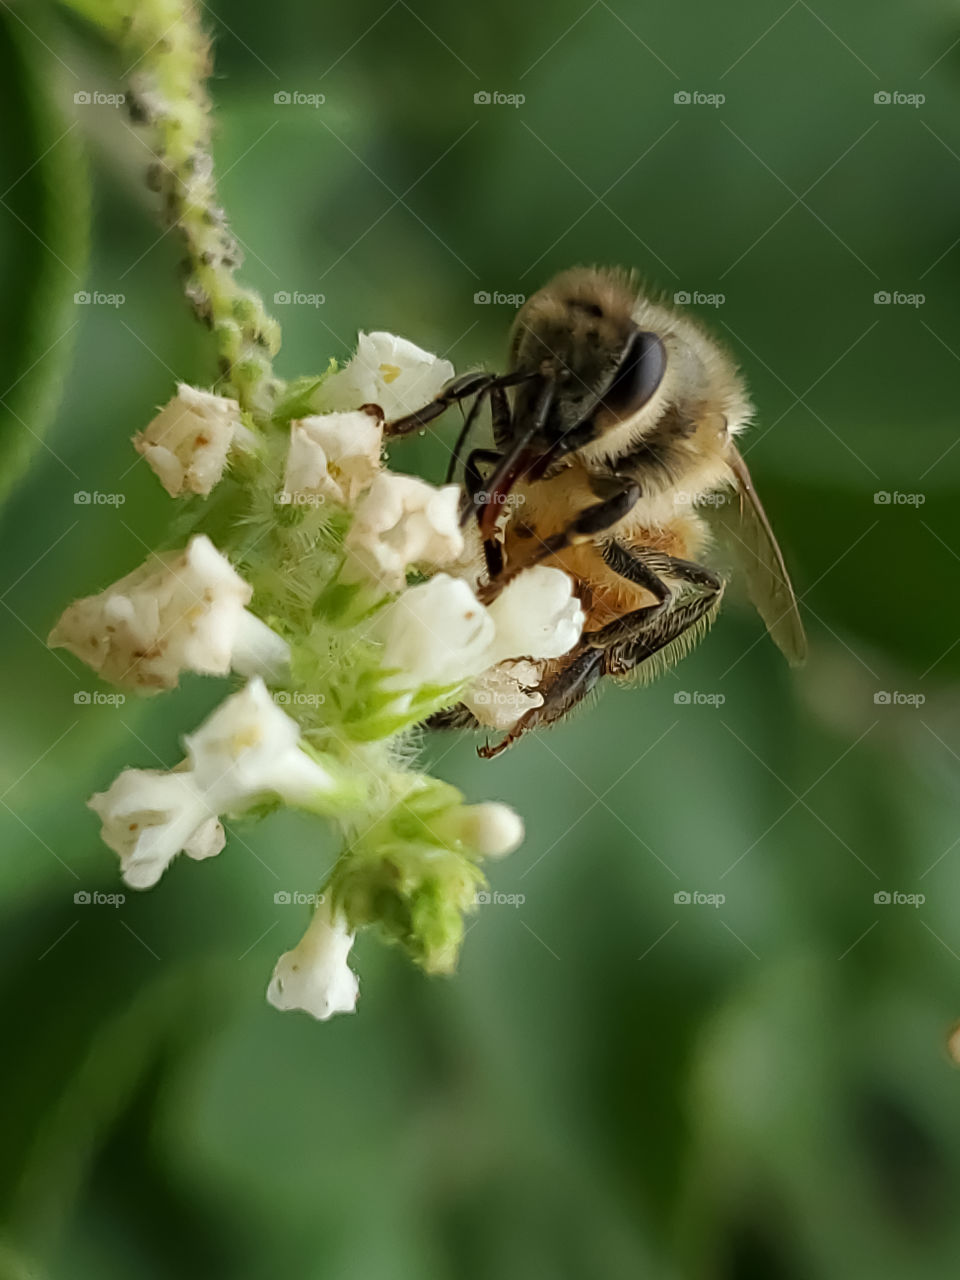 Macro of a Honeybee pollinating white sweet almond verbena cluster flowers.